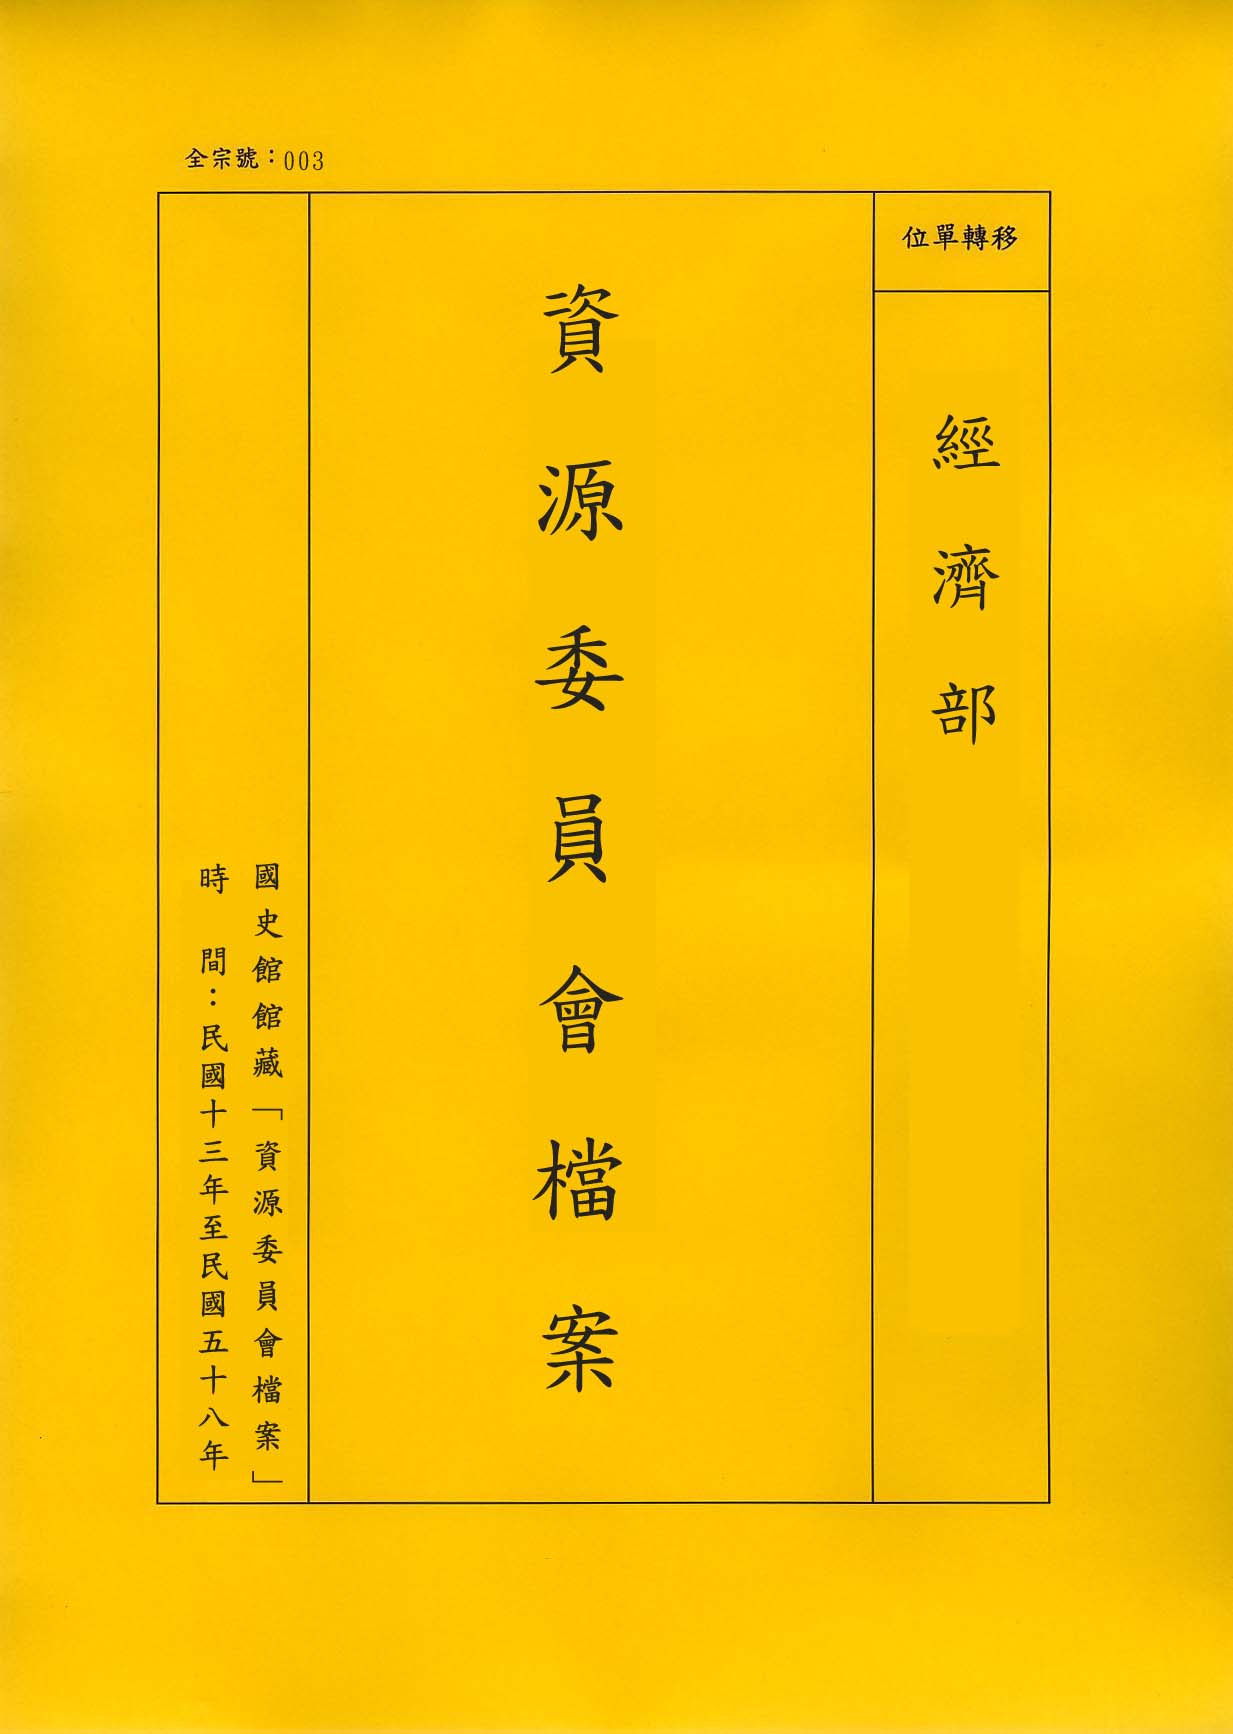 卷名:螳螂川發展計畫報告Planning Report for the Tang-Lang-Chuan De(003-020200-0499)